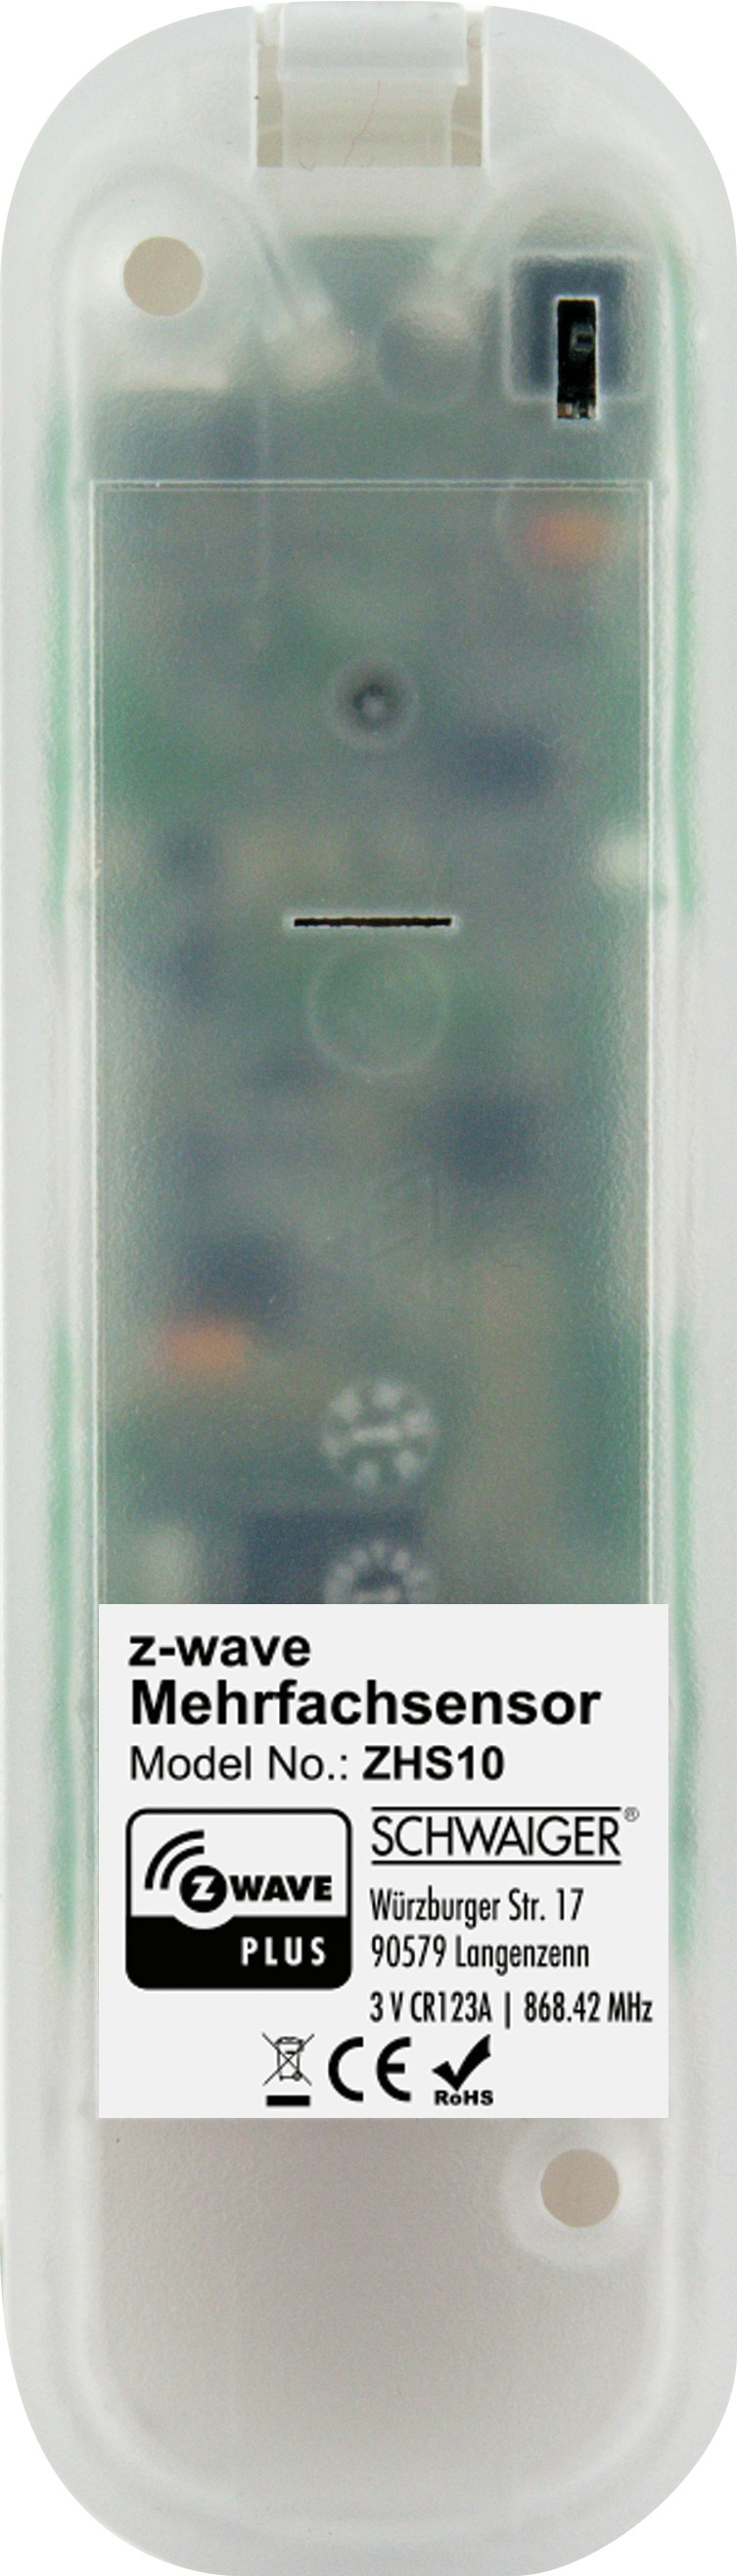 Fenster - Weiß - Mehrfachsensor 1 und Tür- 4 - -ZHS10- Licht Temperatur SCHWAIGER Bewegung in